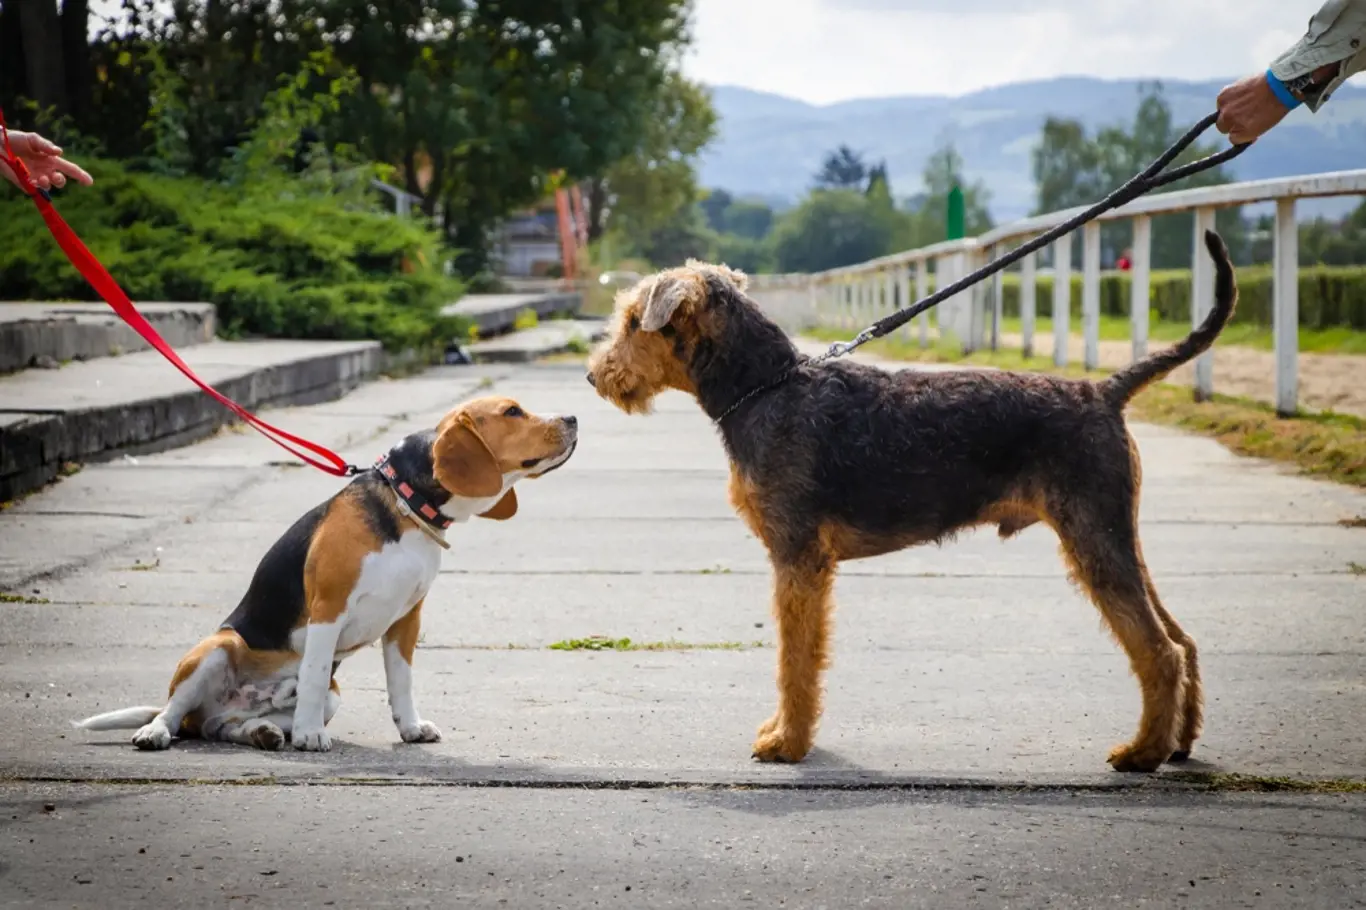 Psi se dorozumívají především postavením uší, ocasu, pohyby trupu.